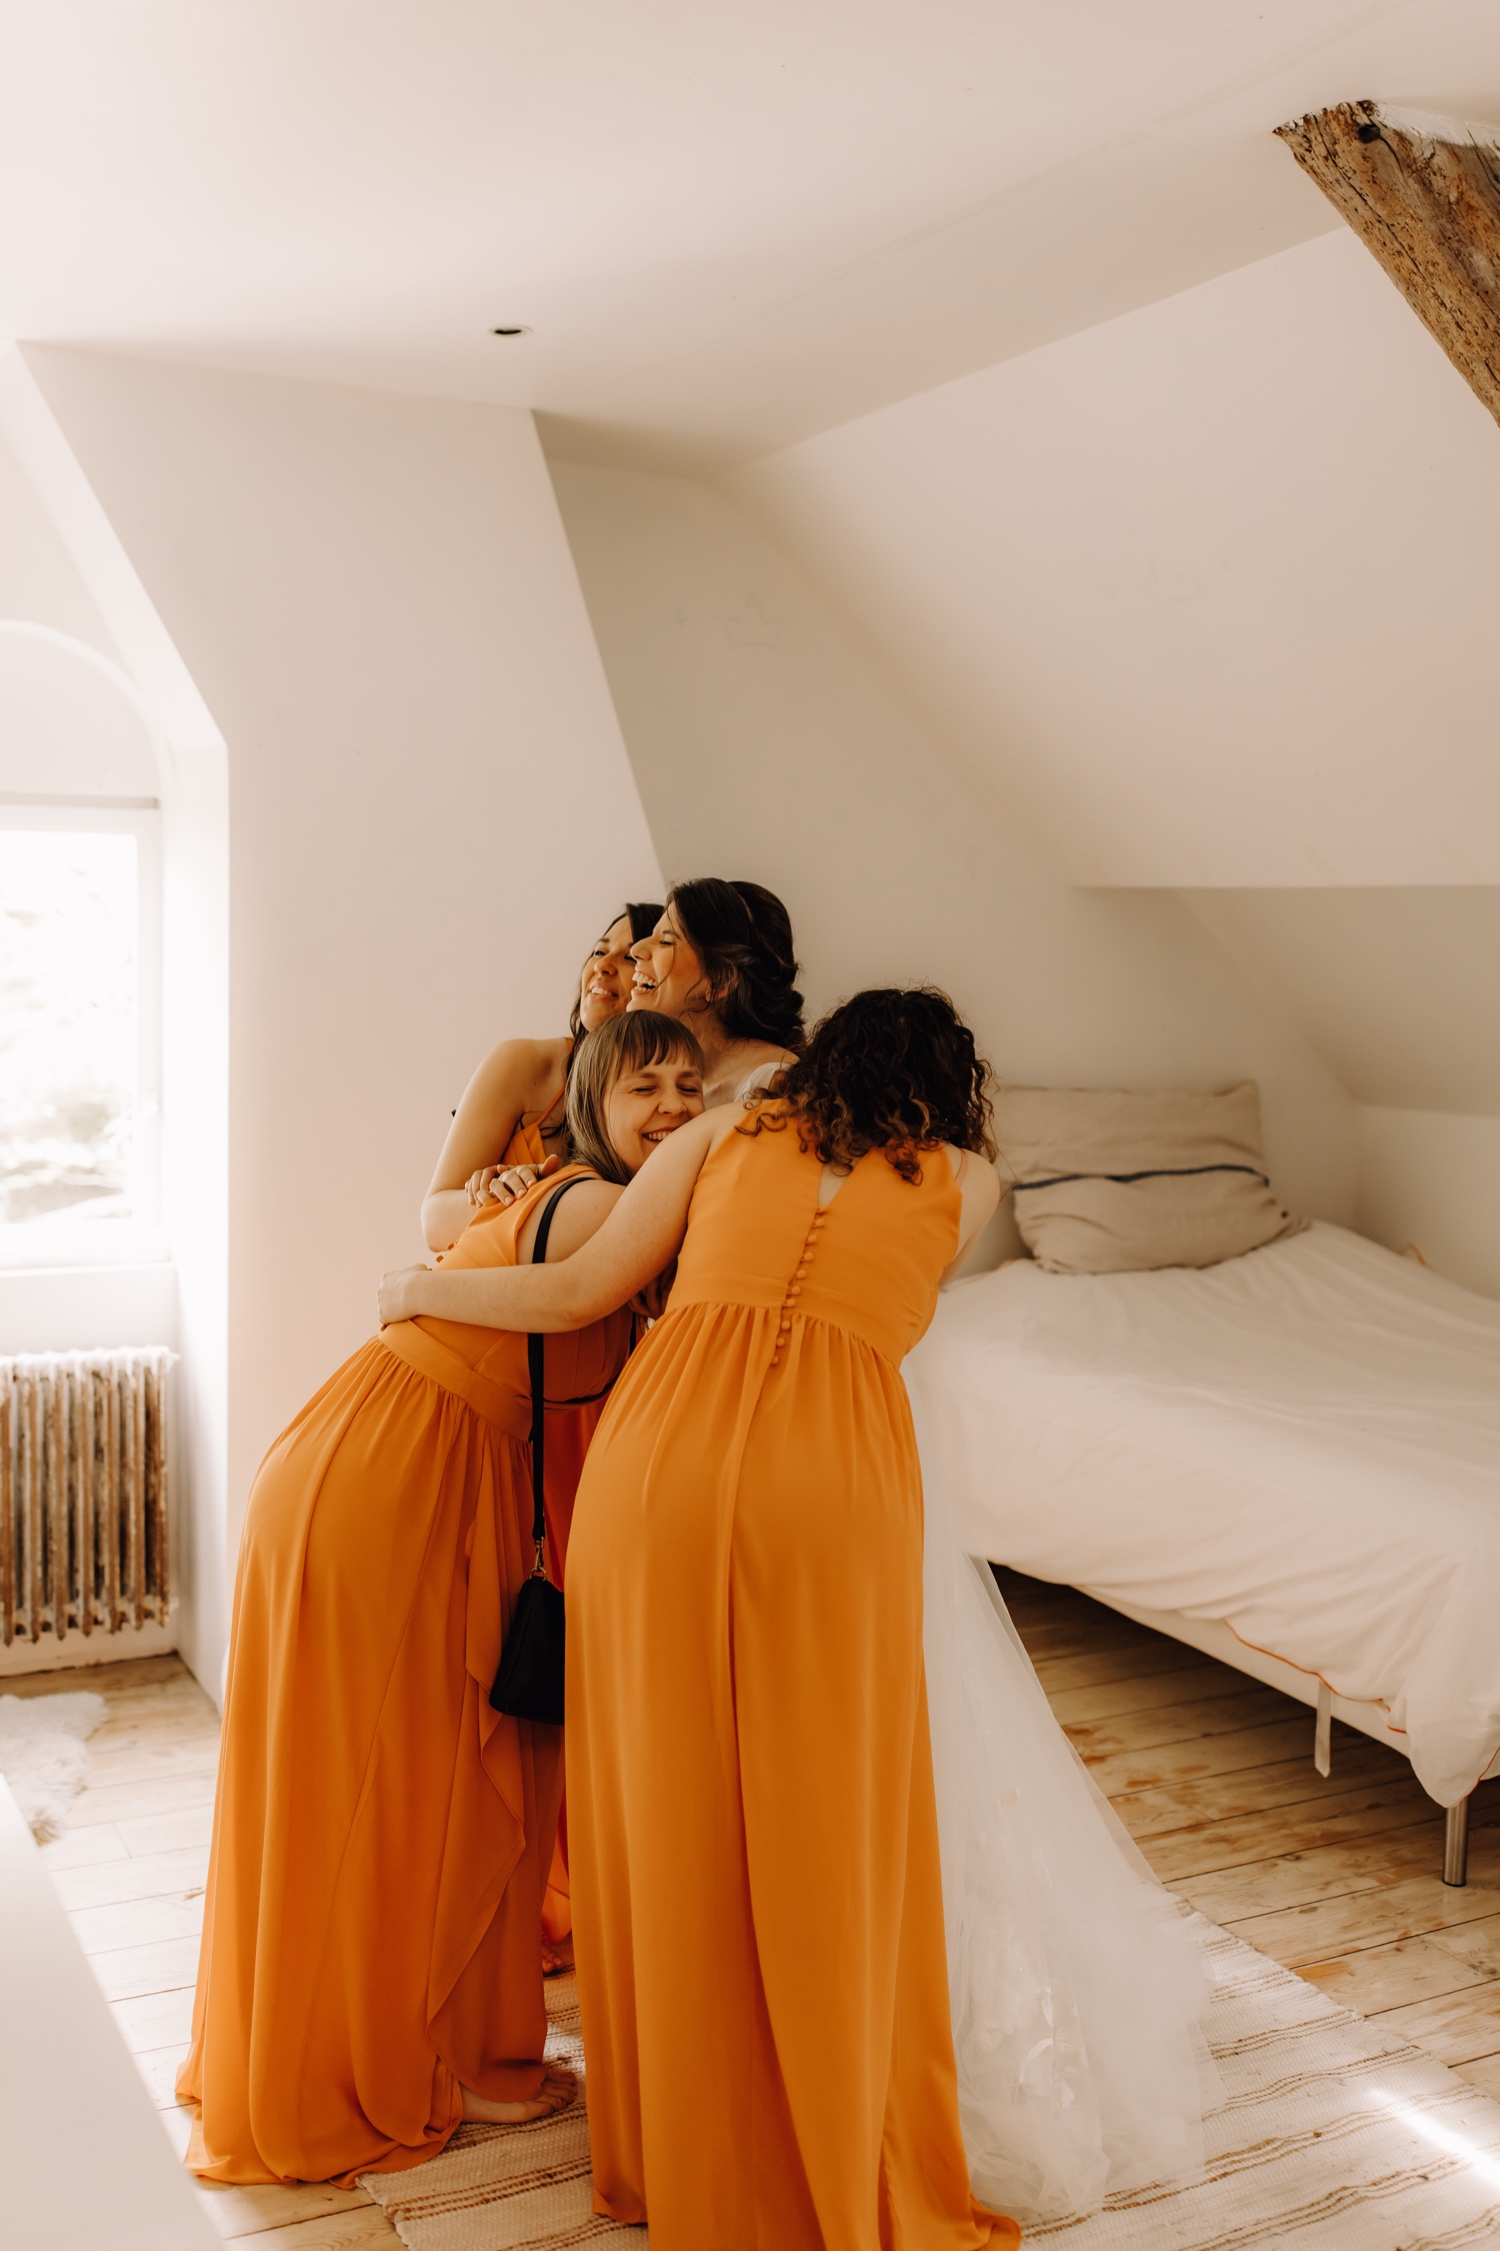 Huwelijksfotograaf Limburg - bruidsmeisjes knuffelen de bruid